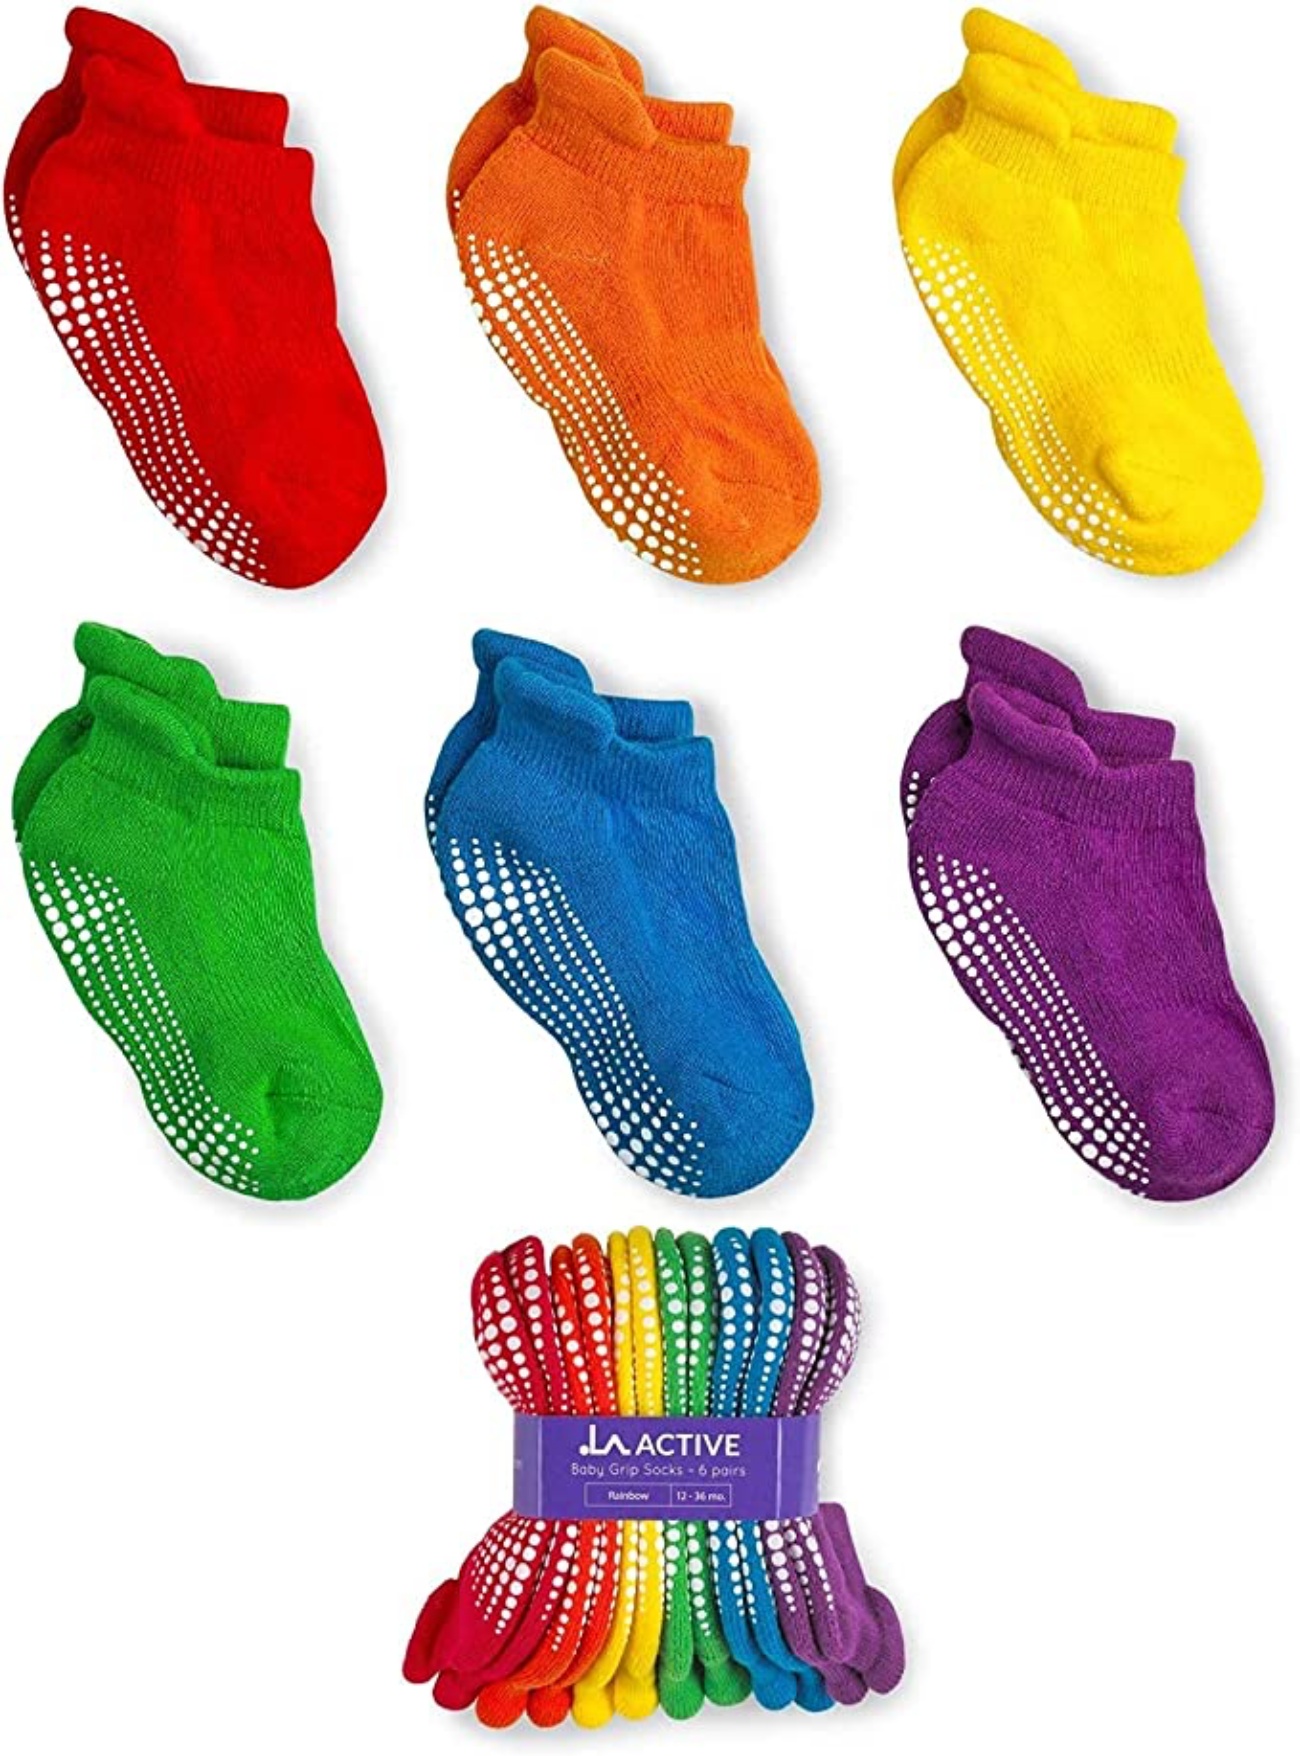 Migliori calzini antiscivolo per bambini